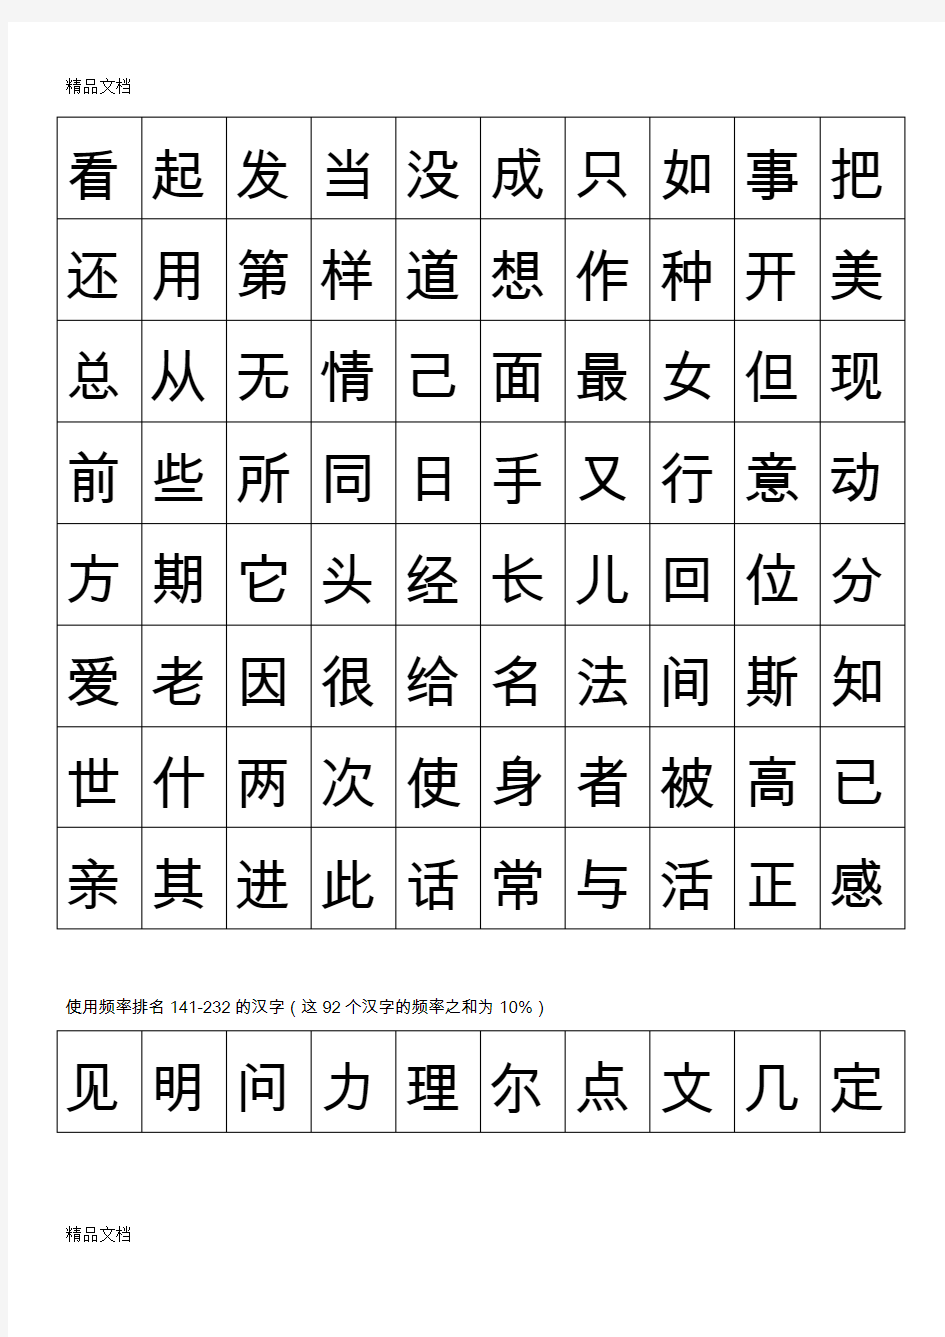 最新最常用的1000个汉字资料